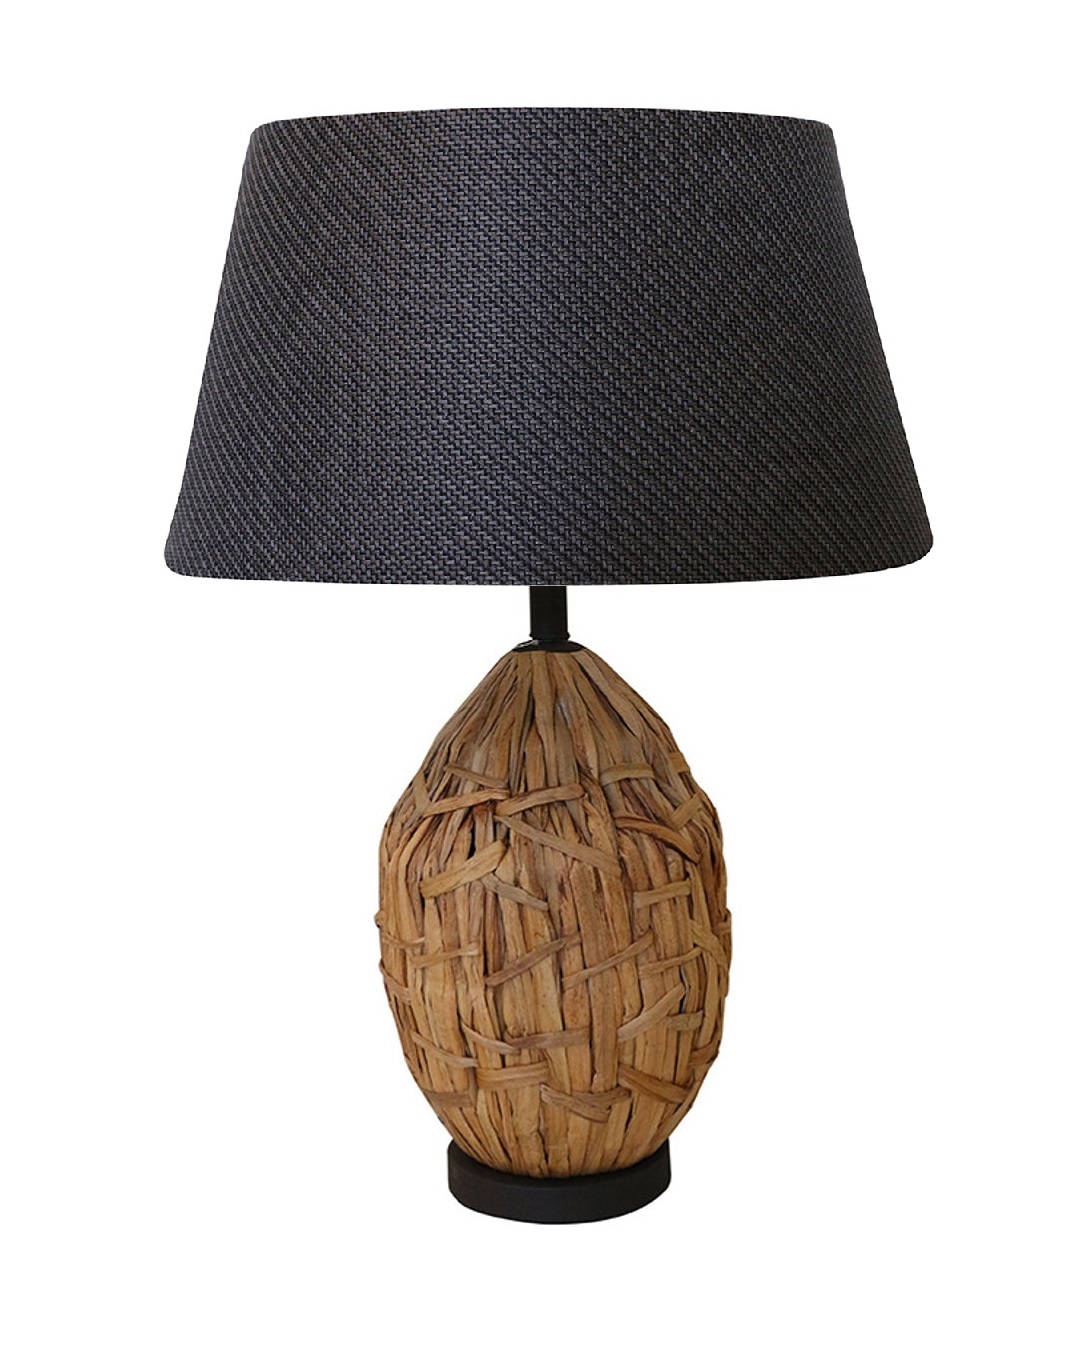 Bali bamboo lamp and black woven shade